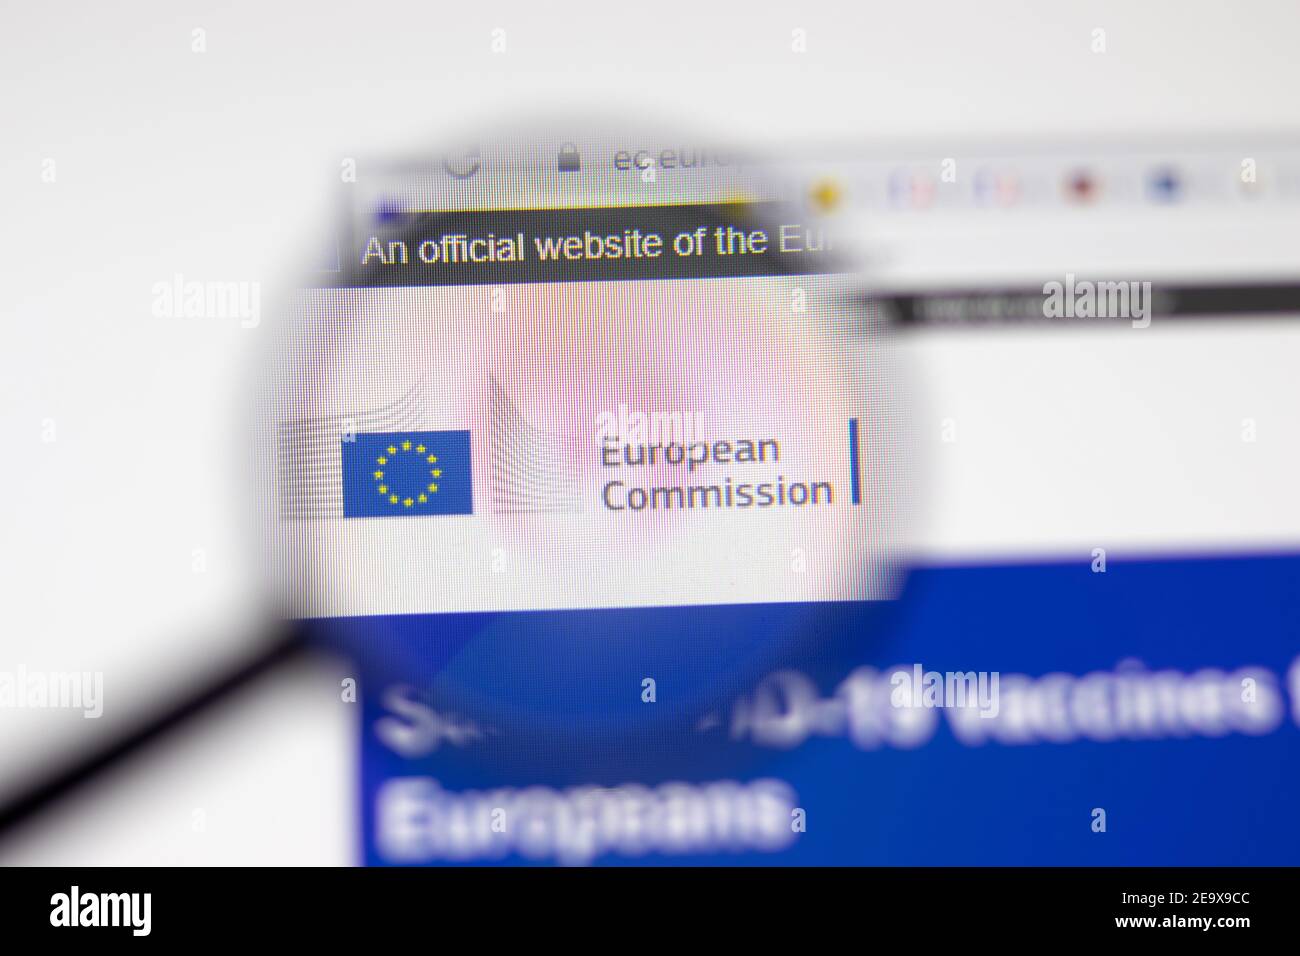 Los Angeles, USA - 1 febbraio 2021: Pagina del sito della Commissione europea. Logo EC.europa.eu sullo schermo, editoriale illustrativo Foto Stock